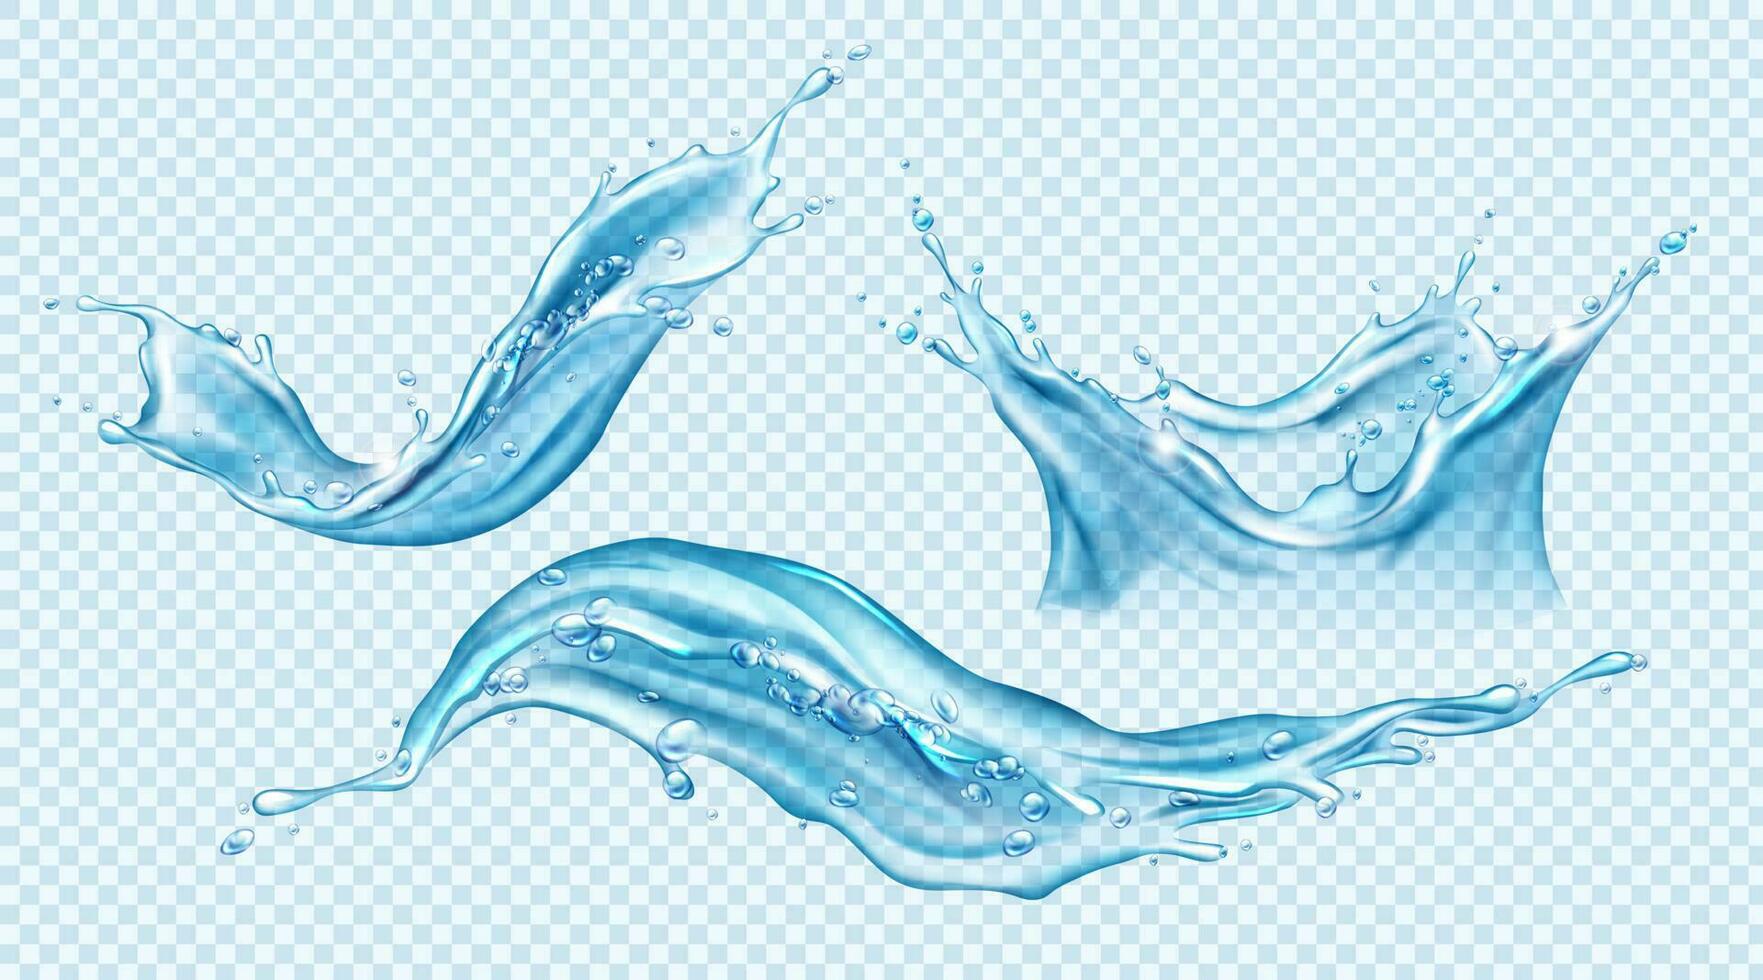 água respingo definir. aqua líquido dinâmico movimento. vetor